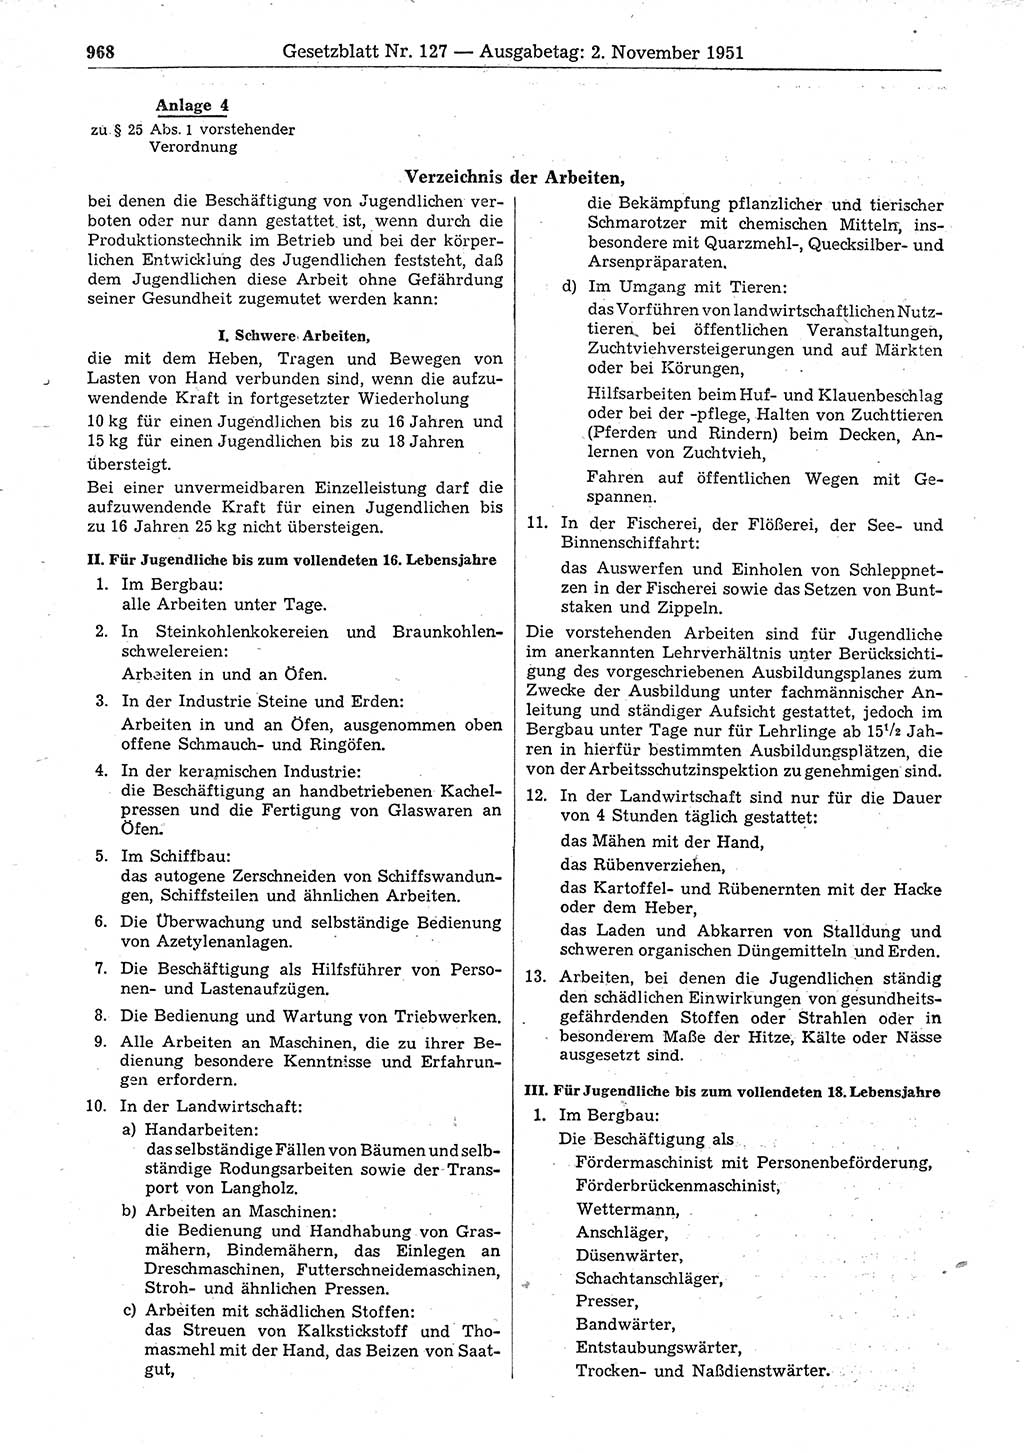 Gesetzblatt (GBl.) der Deutschen Demokratischen Republik (DDR) 1951, Seite 968 (GBl. DDR 1951, S. 968)